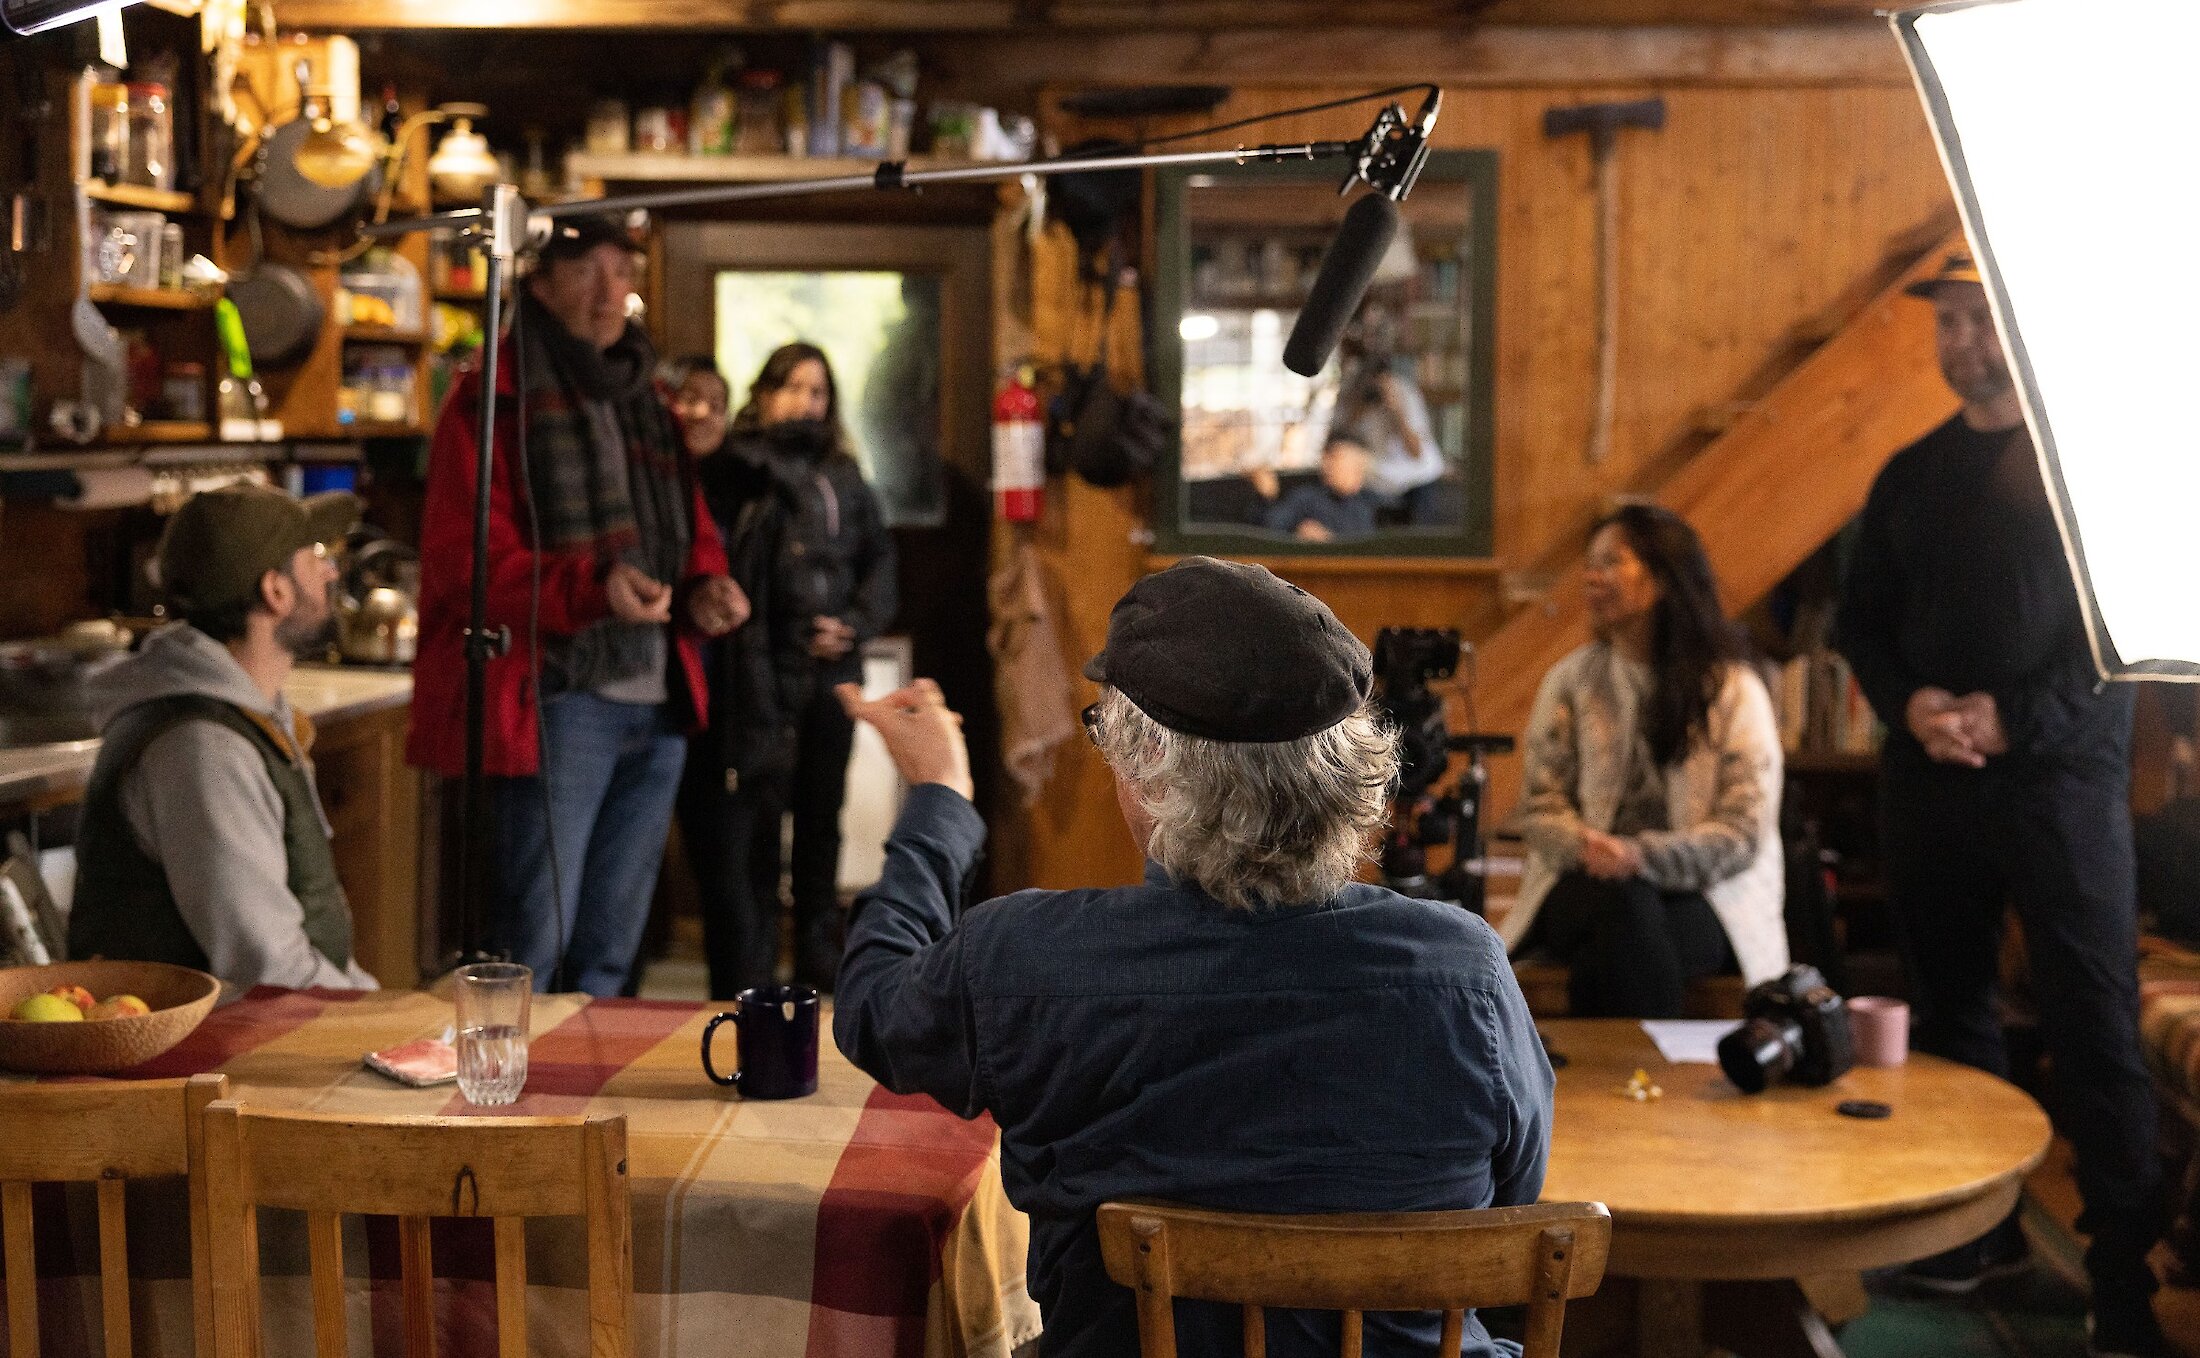 Camera crew filming a scene in a cabin.